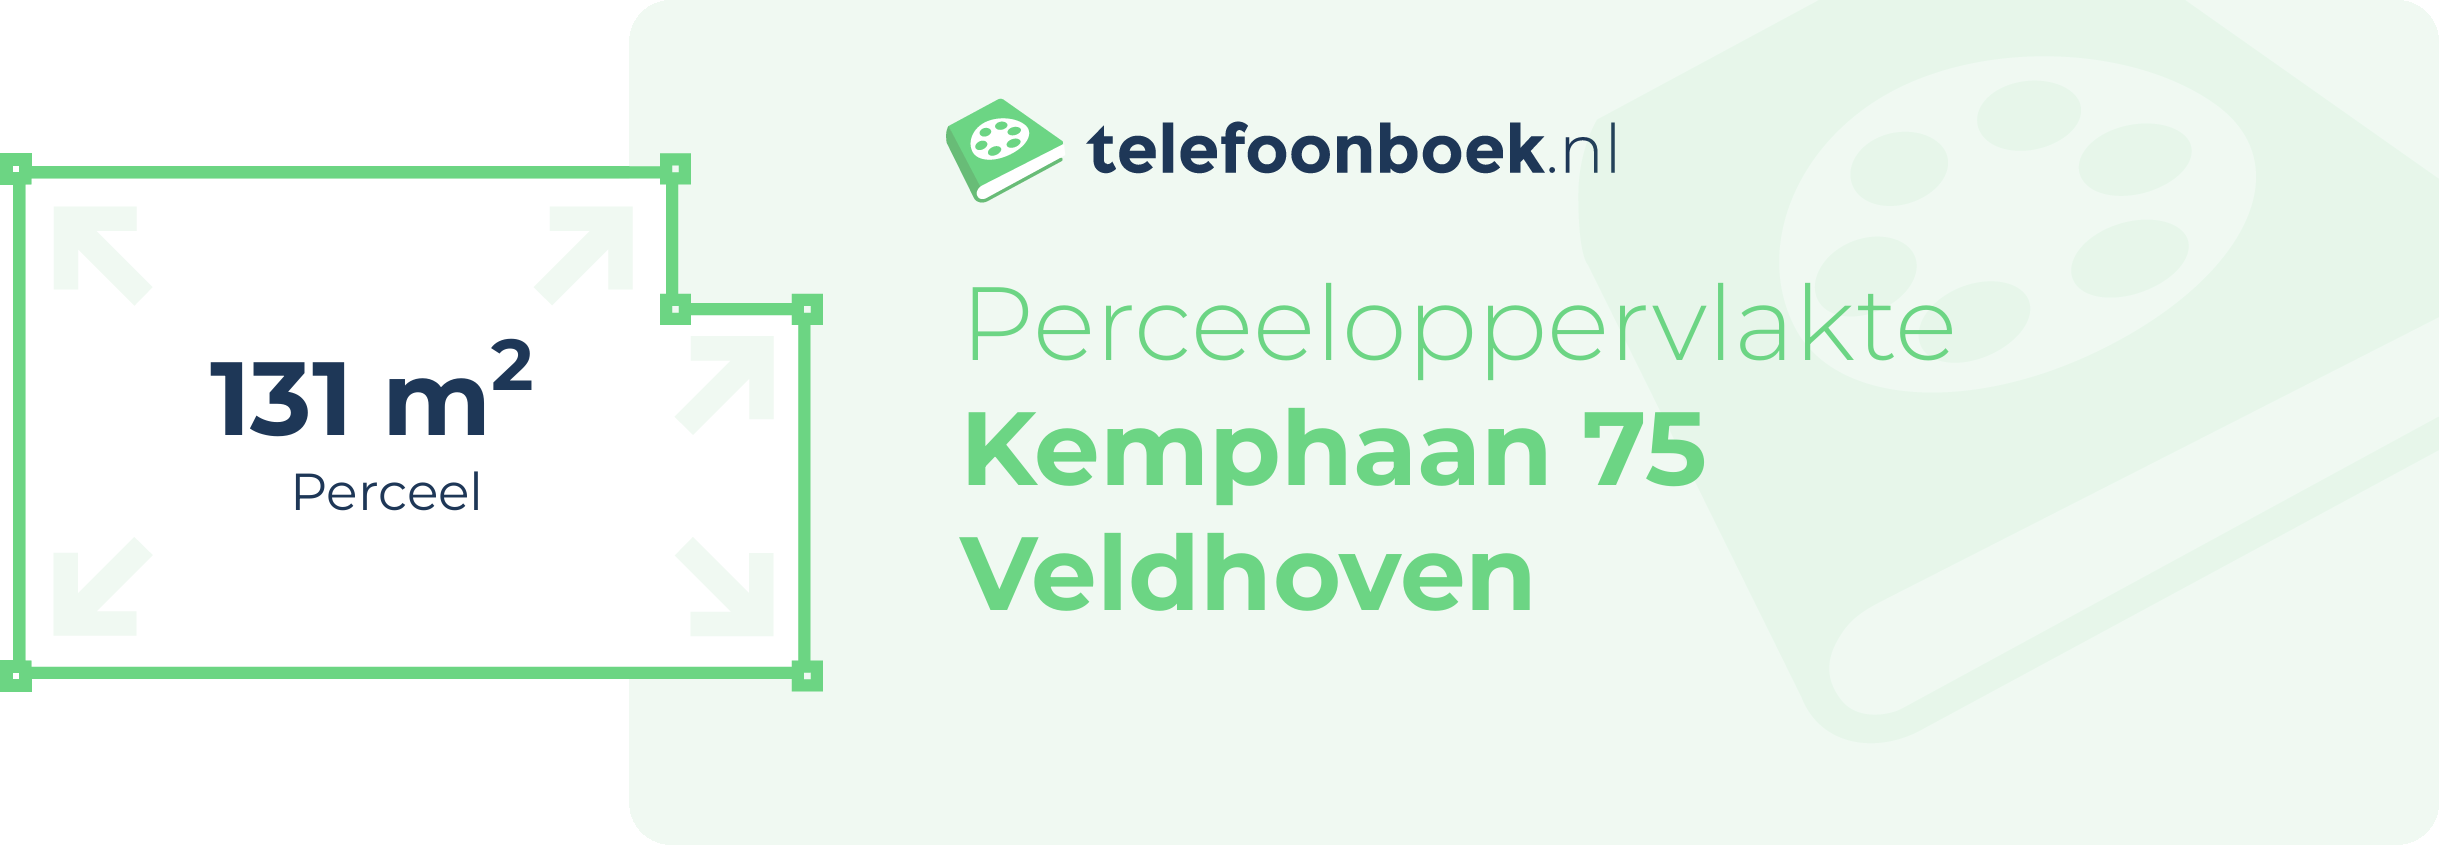 Perceeloppervlakte Kemphaan 75 Veldhoven